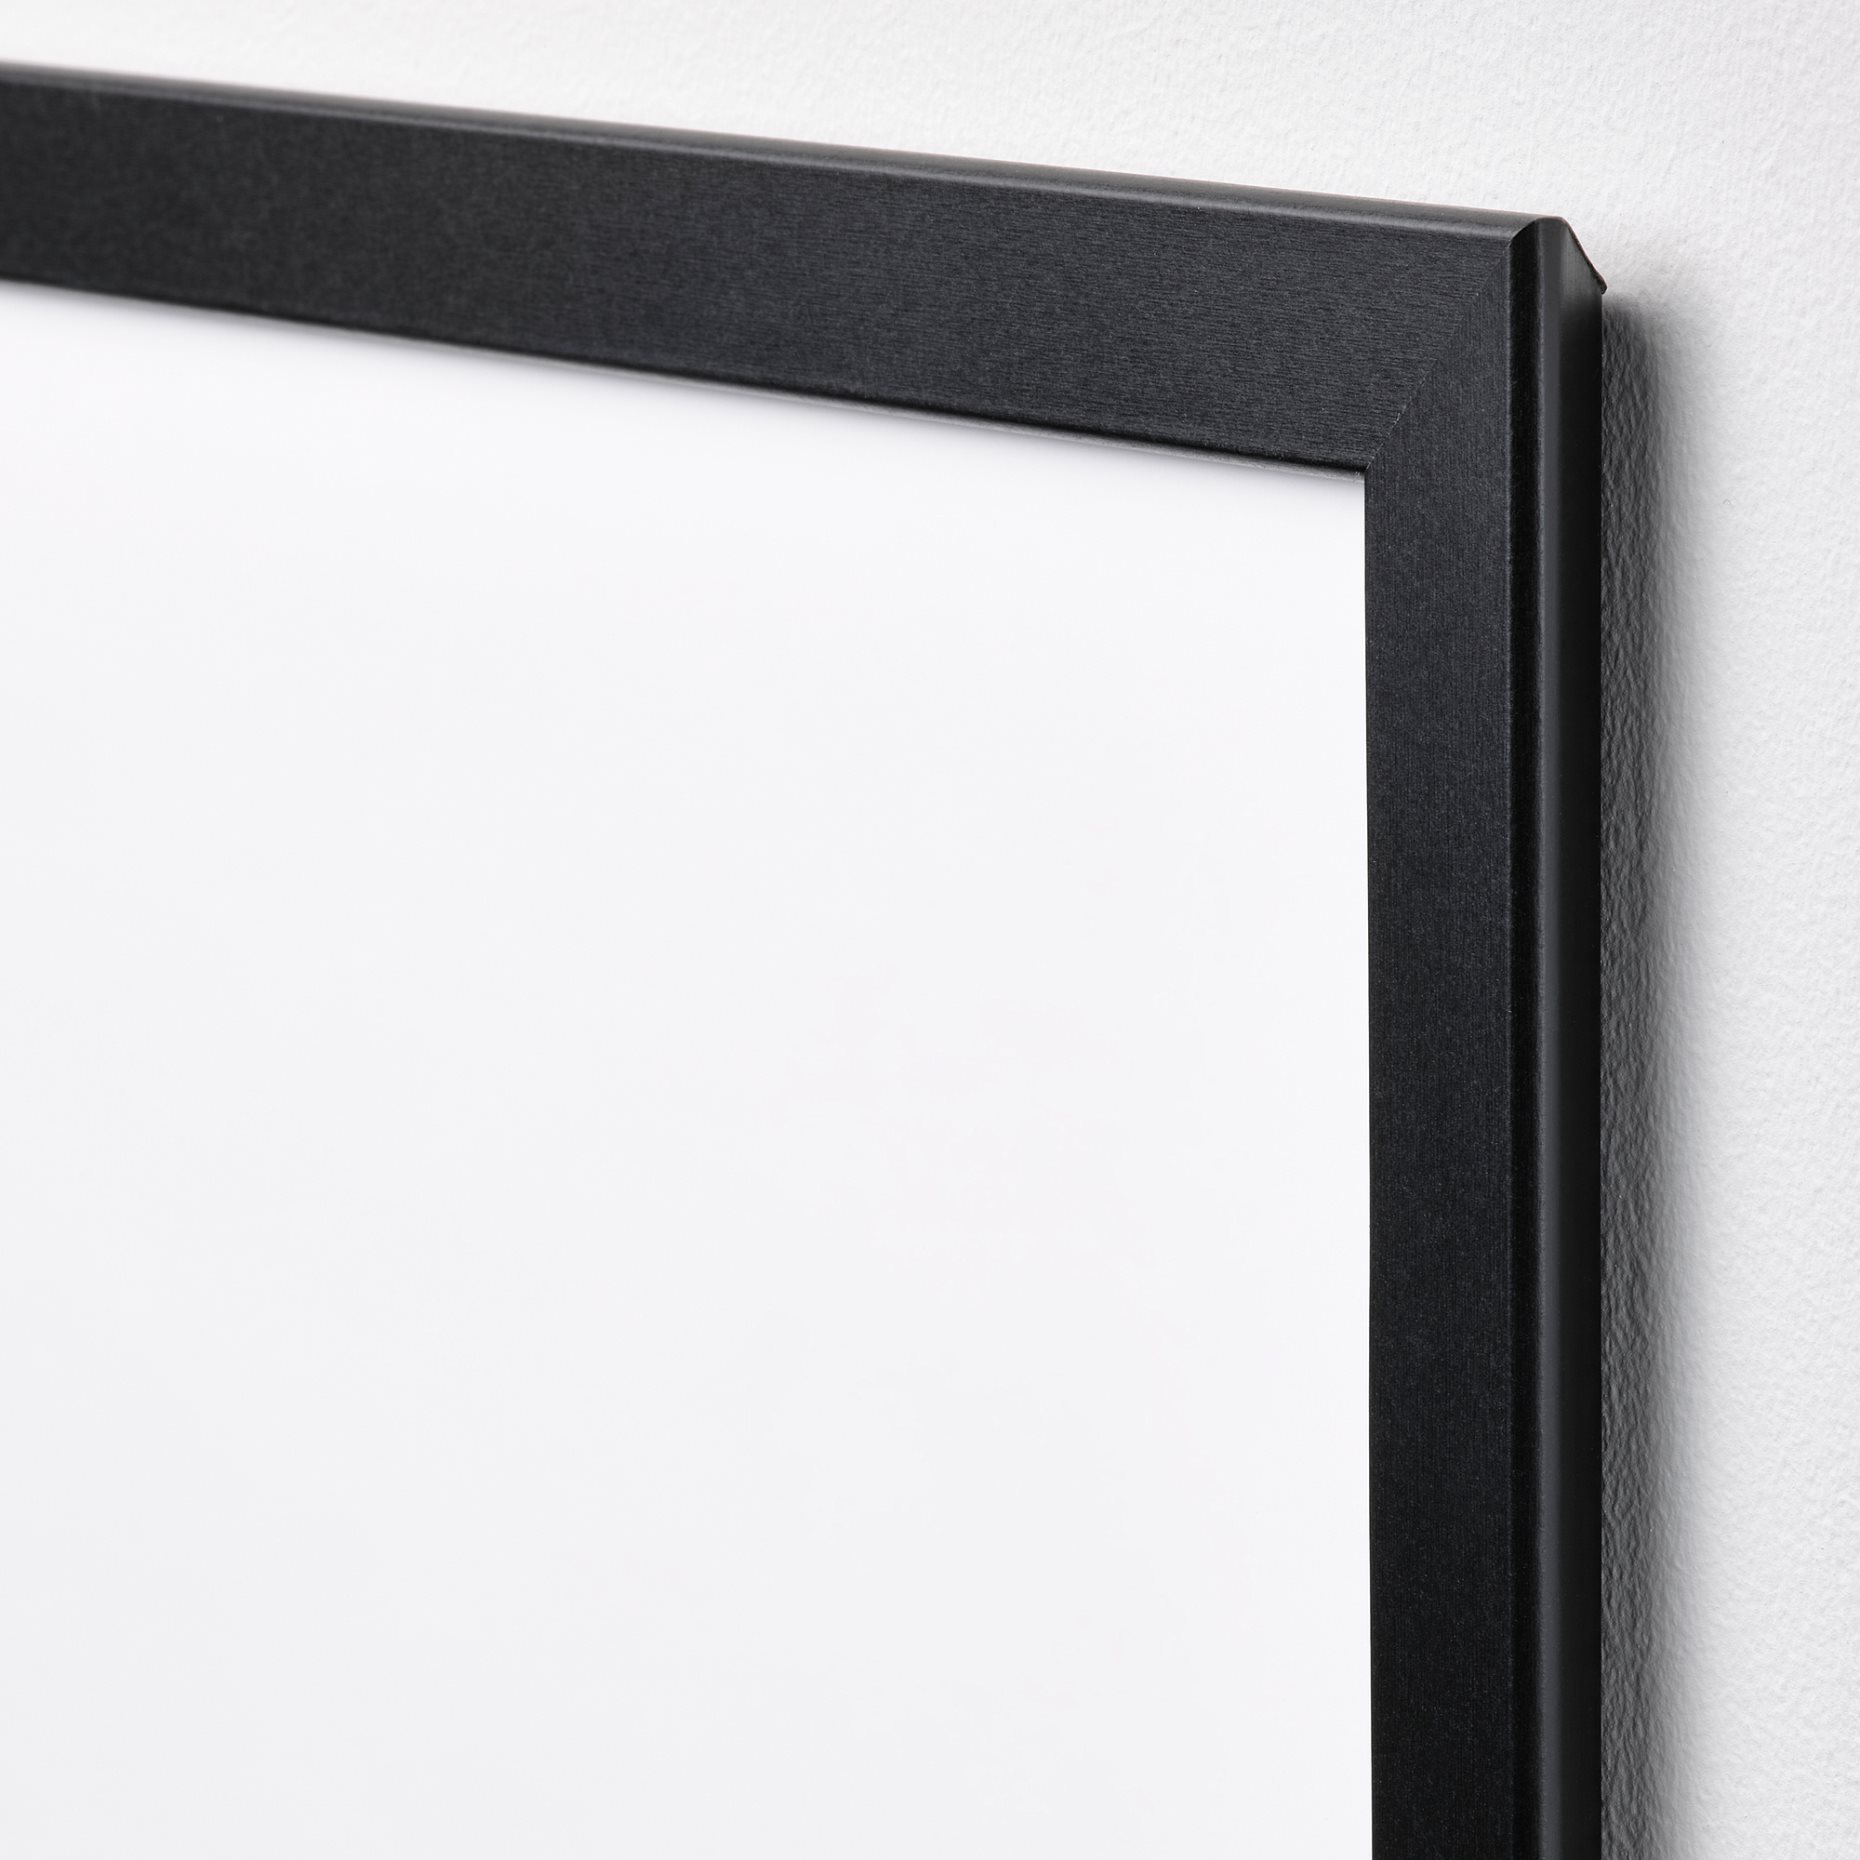 FISKBO, frame, 50x70 cm, 502.979.61